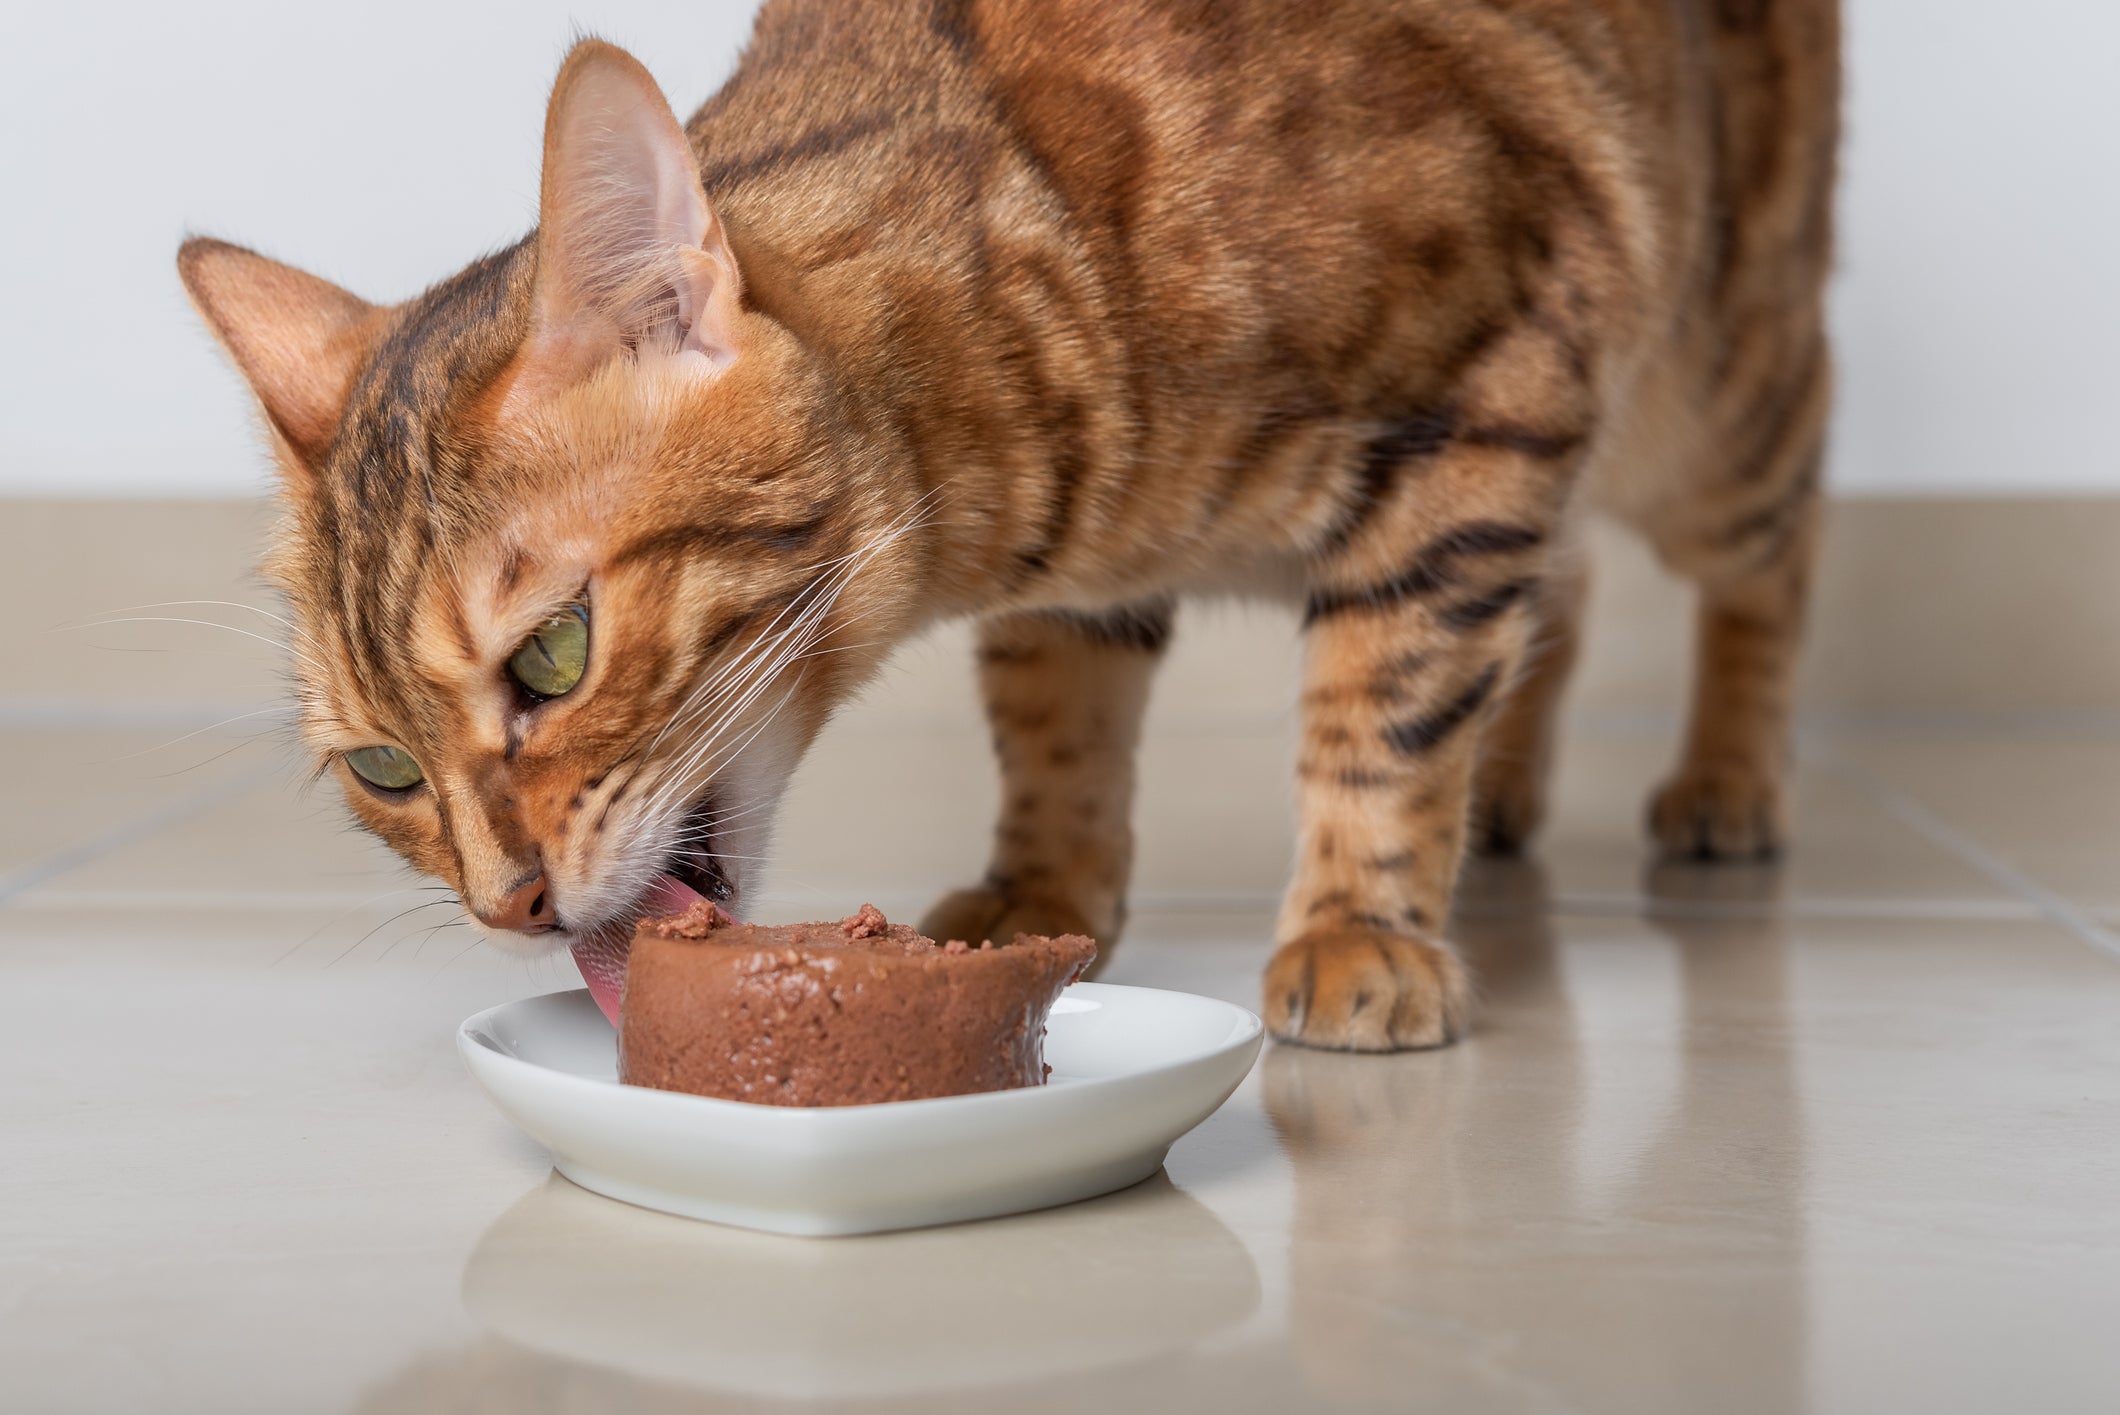 Gato laranja com listras escuras comendo bolo de ração molhado em prato branco no chão